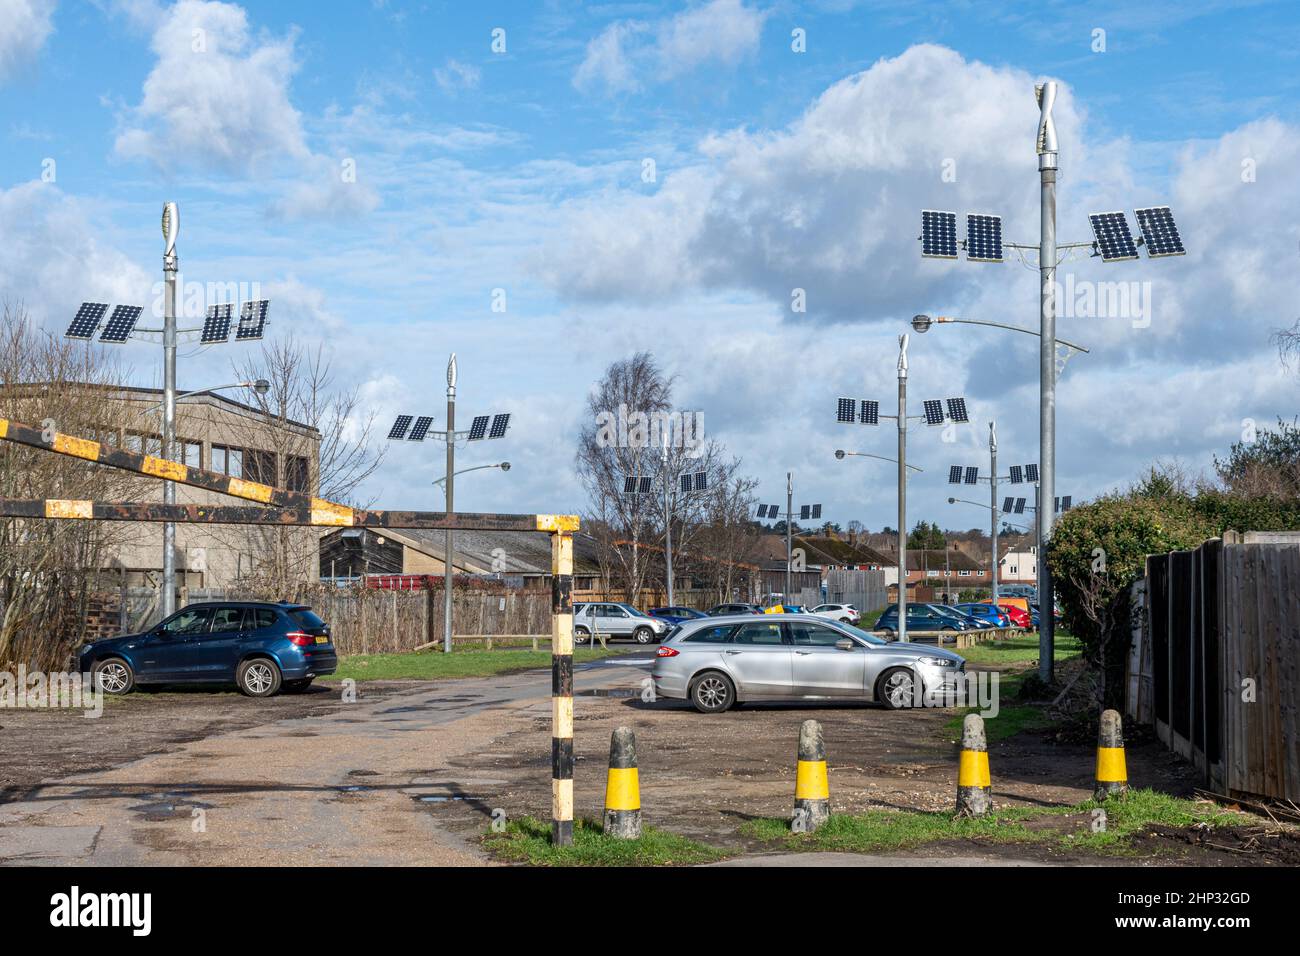 Panneaux d'énergie éolienne et solaire combinés générant de l'énergie renouvelable dans le parc de stationnement Old Woking, Surrey, Angleterre, Royaume-Uni Banque D'Images